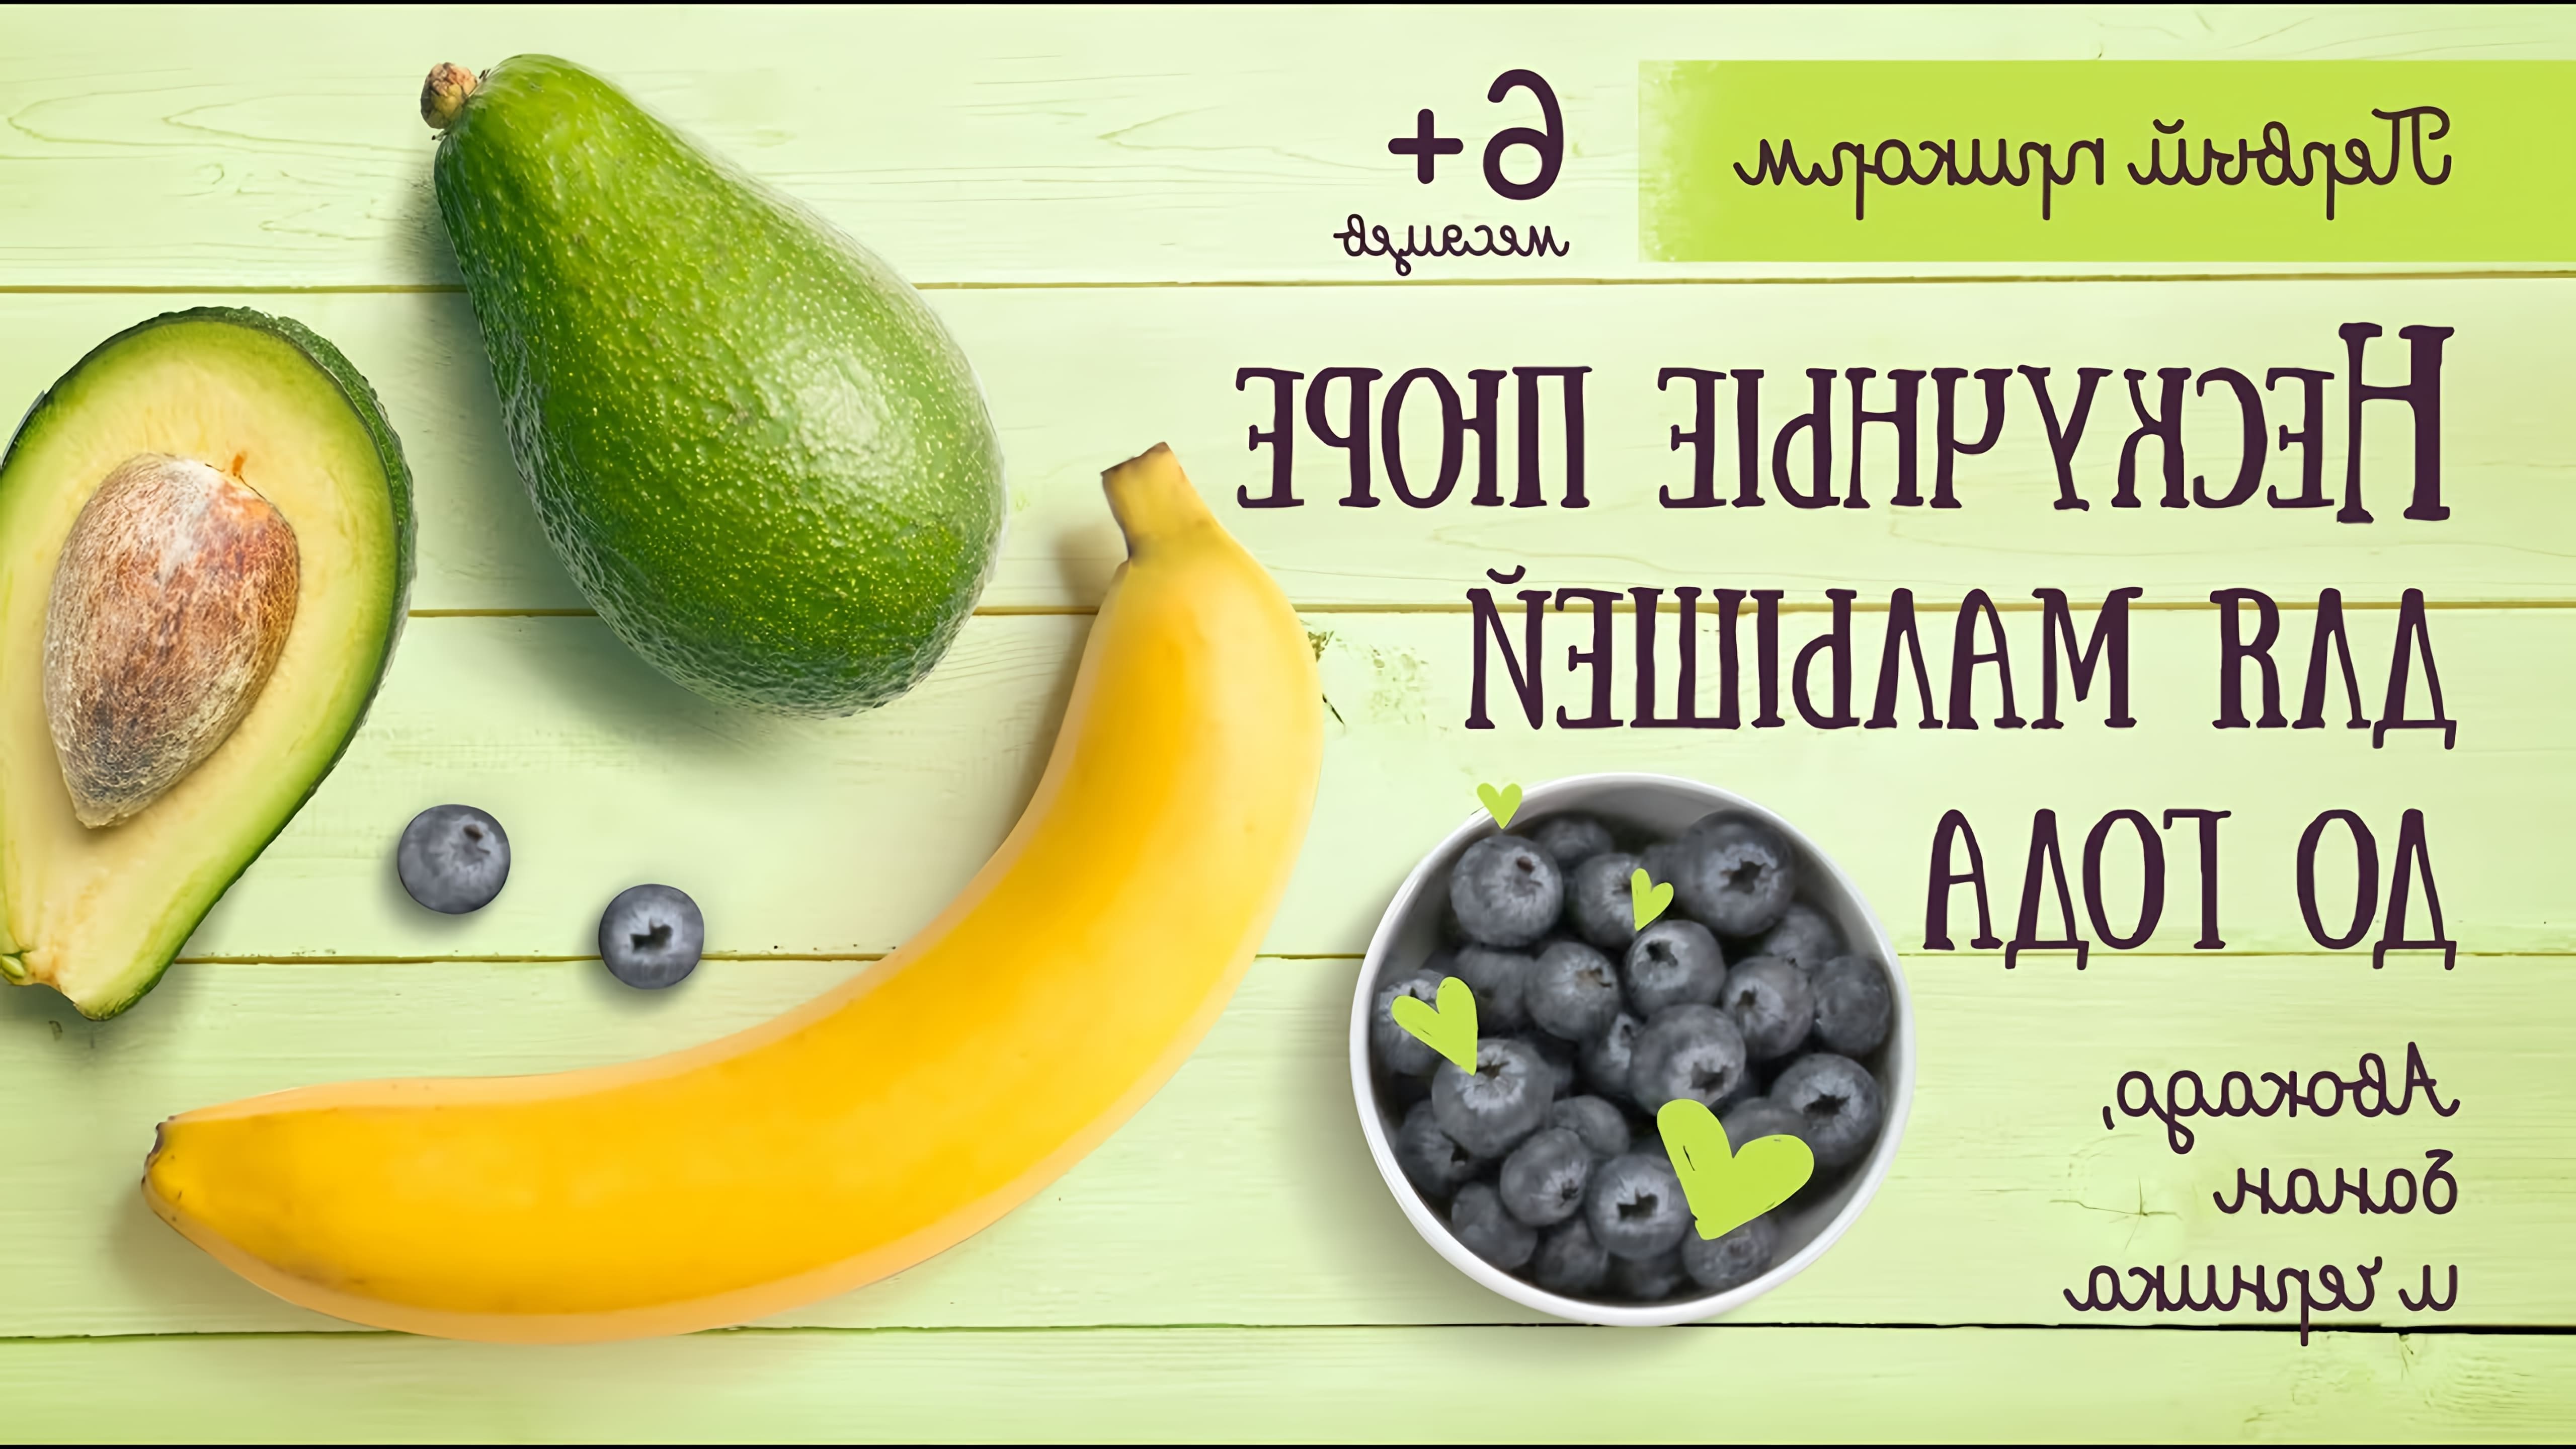 В этом видео-ролике будут представлены рецепты нескучных пюре для малышей до года, приготовленных из банана, черники и авокадо